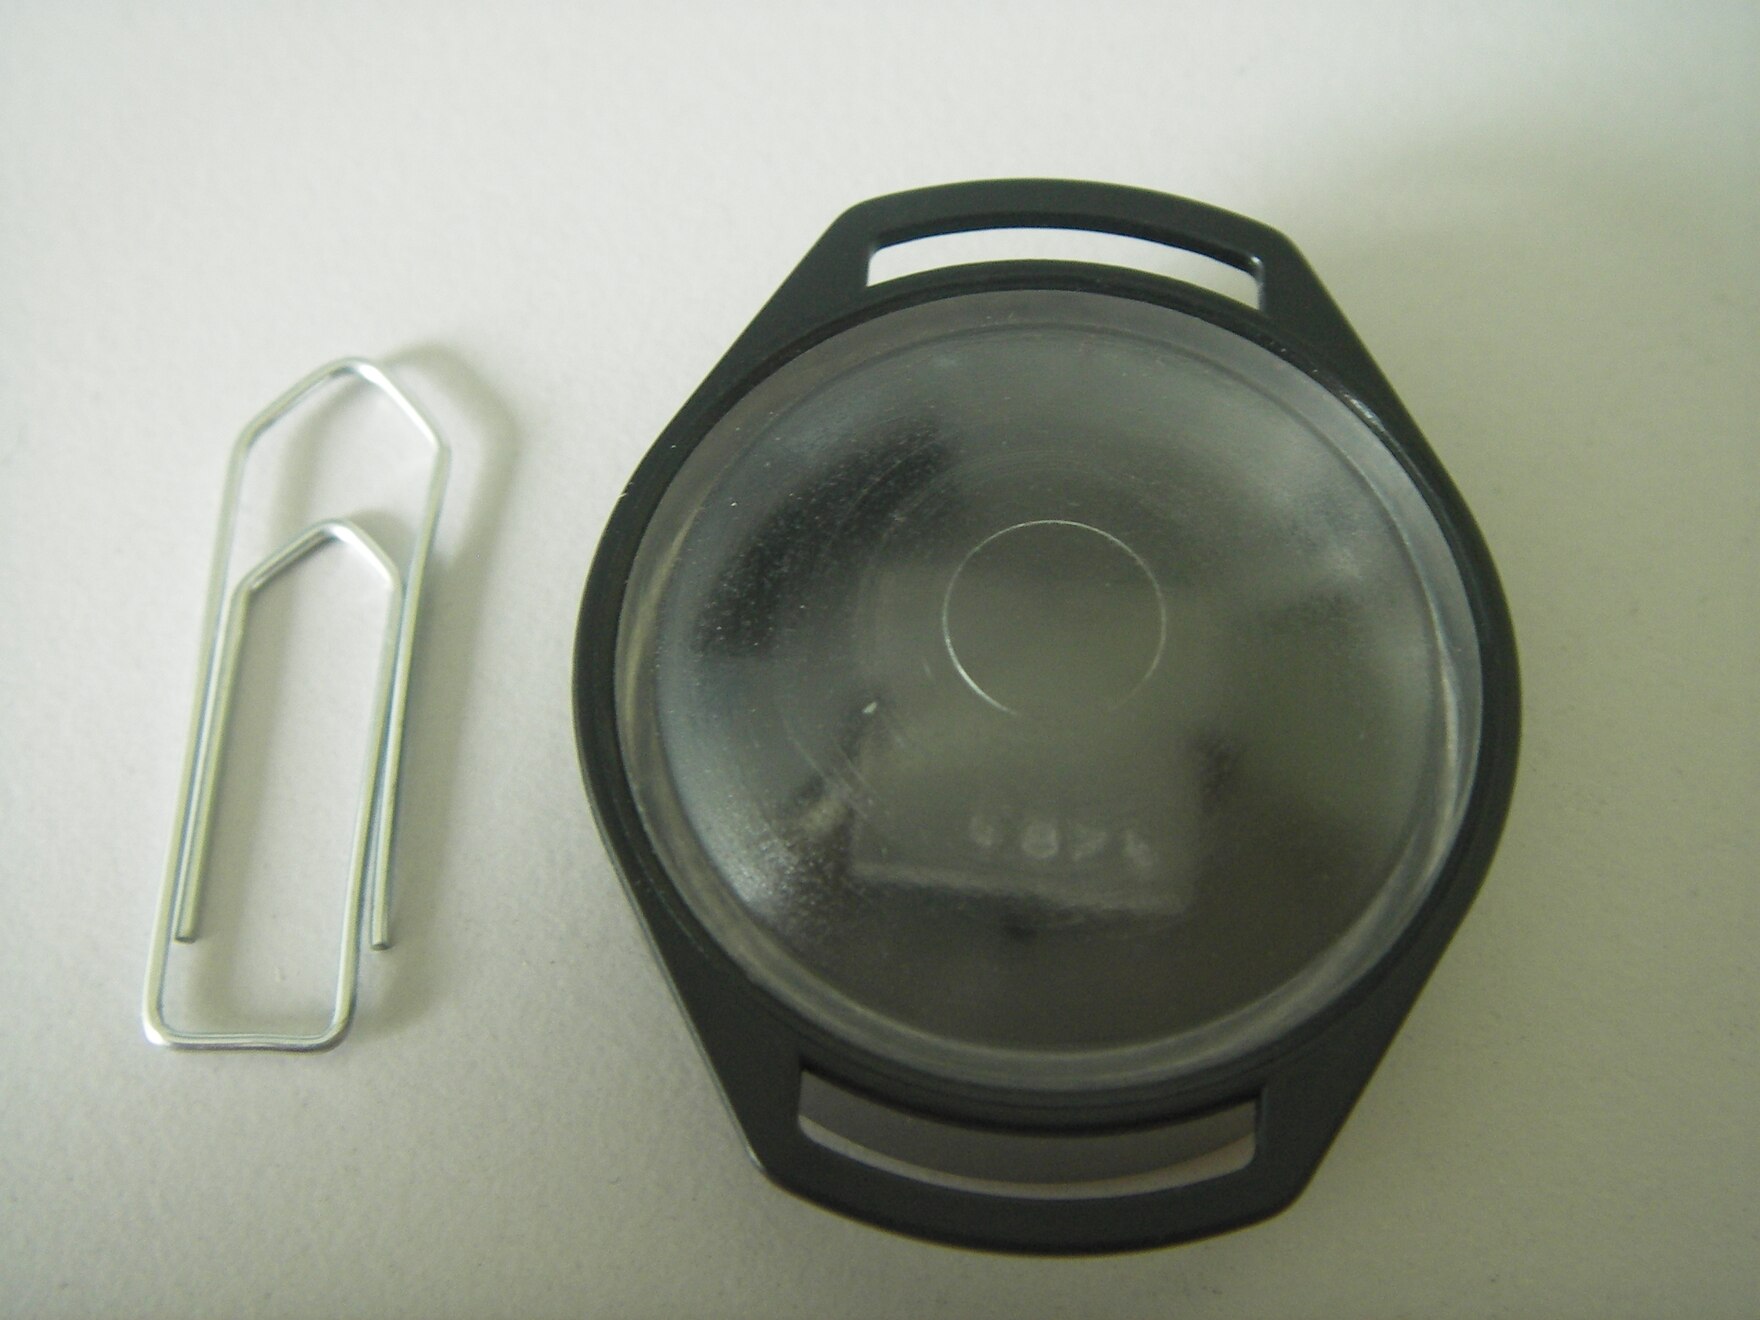 Die Form des Dosimeters ähnelt einer Armbanduhr. Die Größe wird durch eine etwa gleich große Büroklammer verdeutlicht.